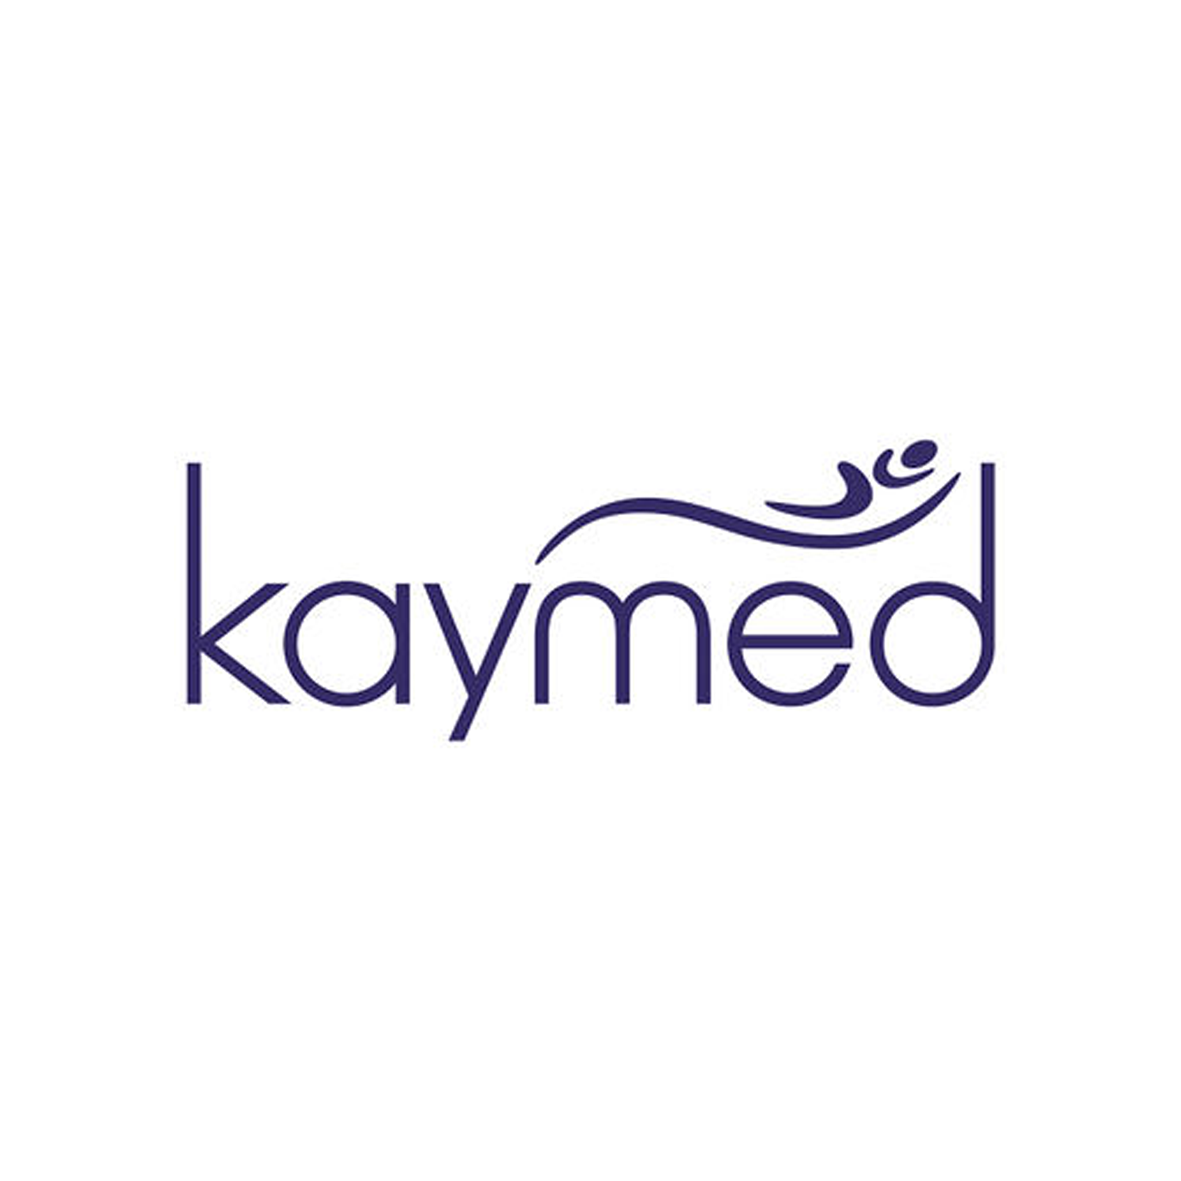 Kaymed Company Logo